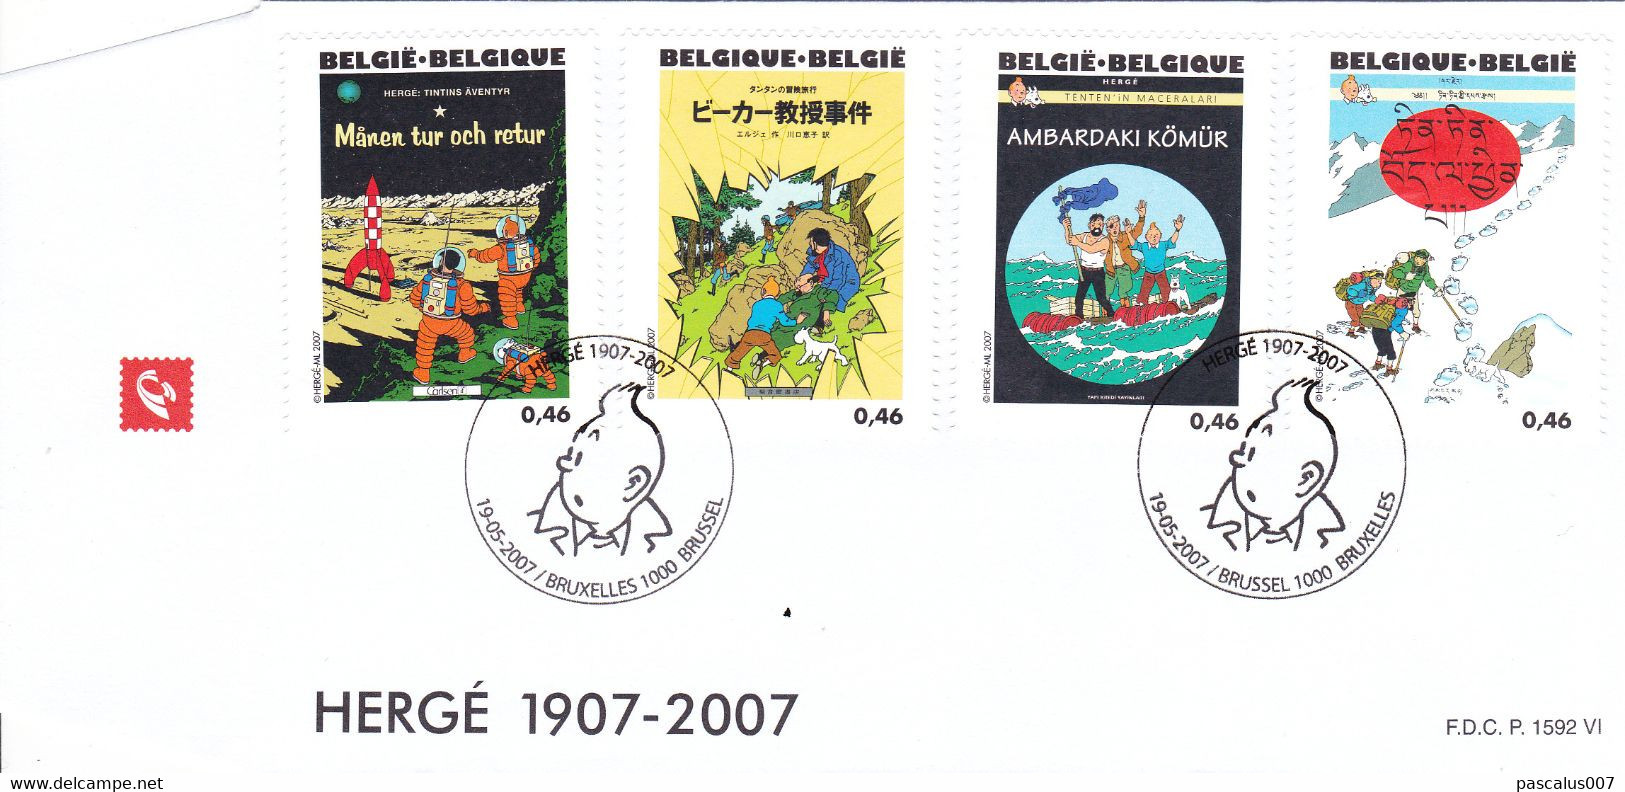 B01-389 Bloc 143 FDC P1592 VI 3653 3654 3655 3656 1907 2007 Tintin Kuifje 4 Albums Hergé 19-05-2007 Bruxelles 1000 Bruss - 2001-2010